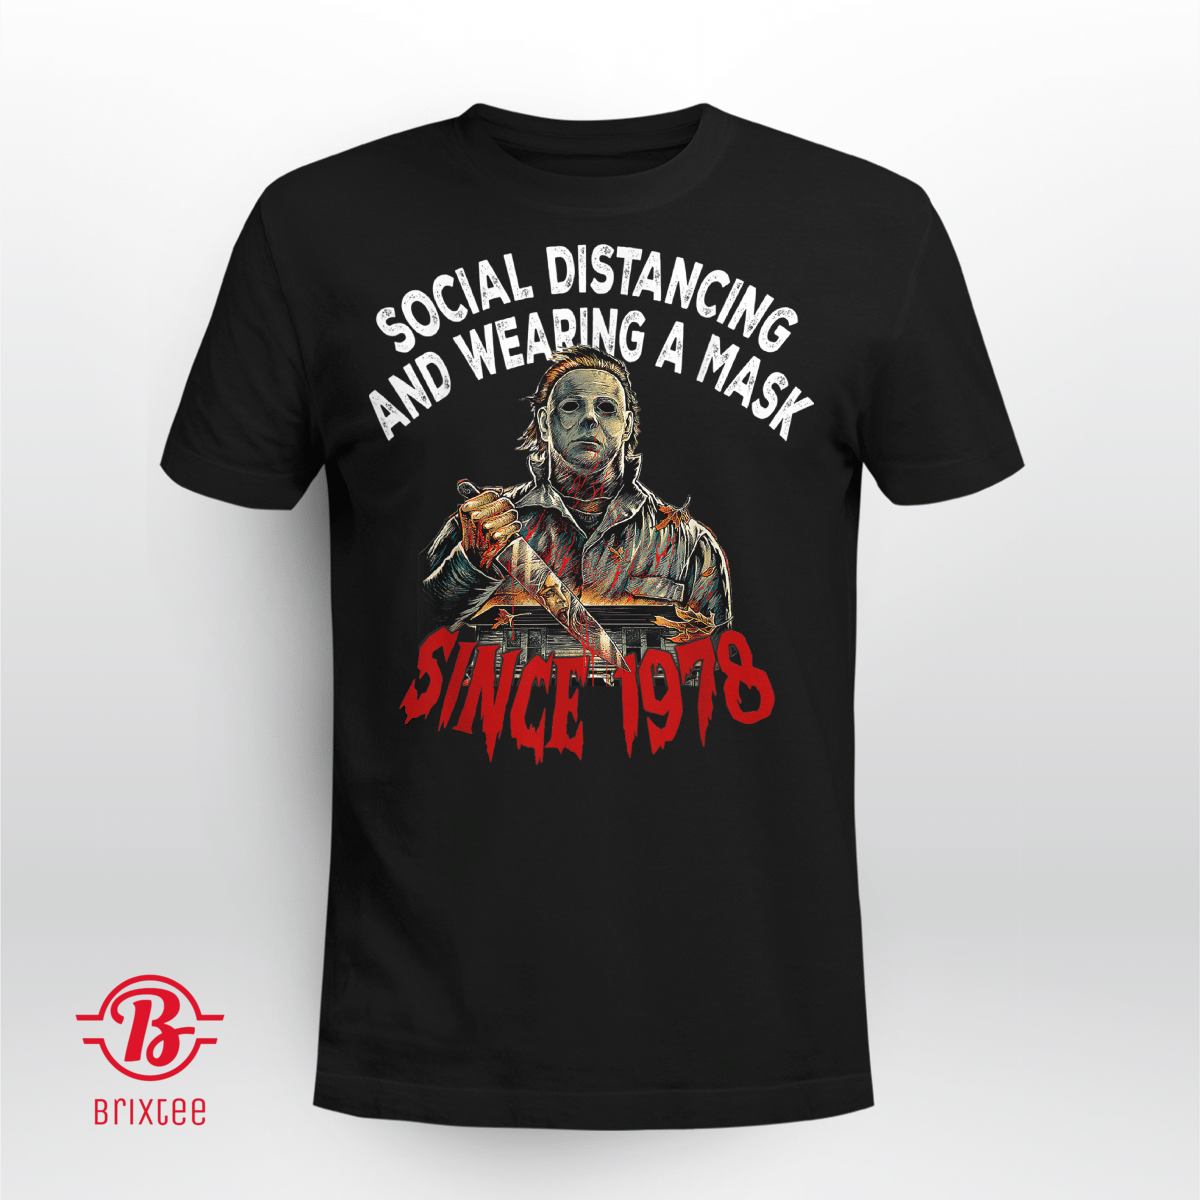 BSocial Distancing & Wearing A Horror Halloween Mask